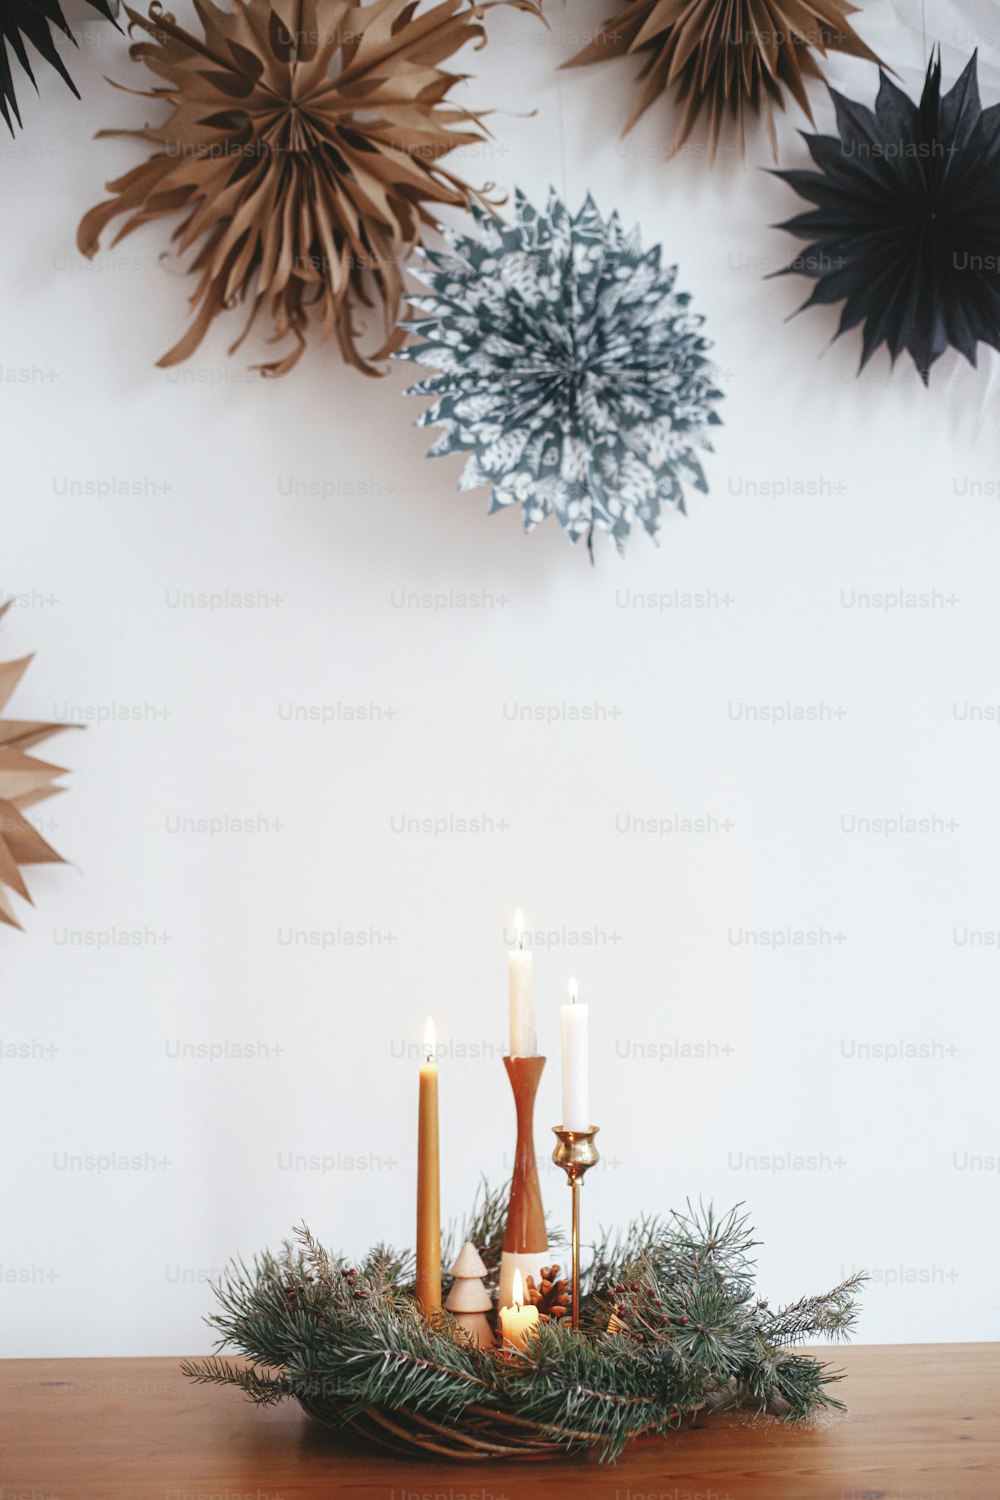 Elegante coroa de Natal com velas e decorações na mesa de madeira no fundo da parede branca com estrelas de papel suecas. Tempo de inverno atmosférico. Advento natalino, hygge festivo escandinavo